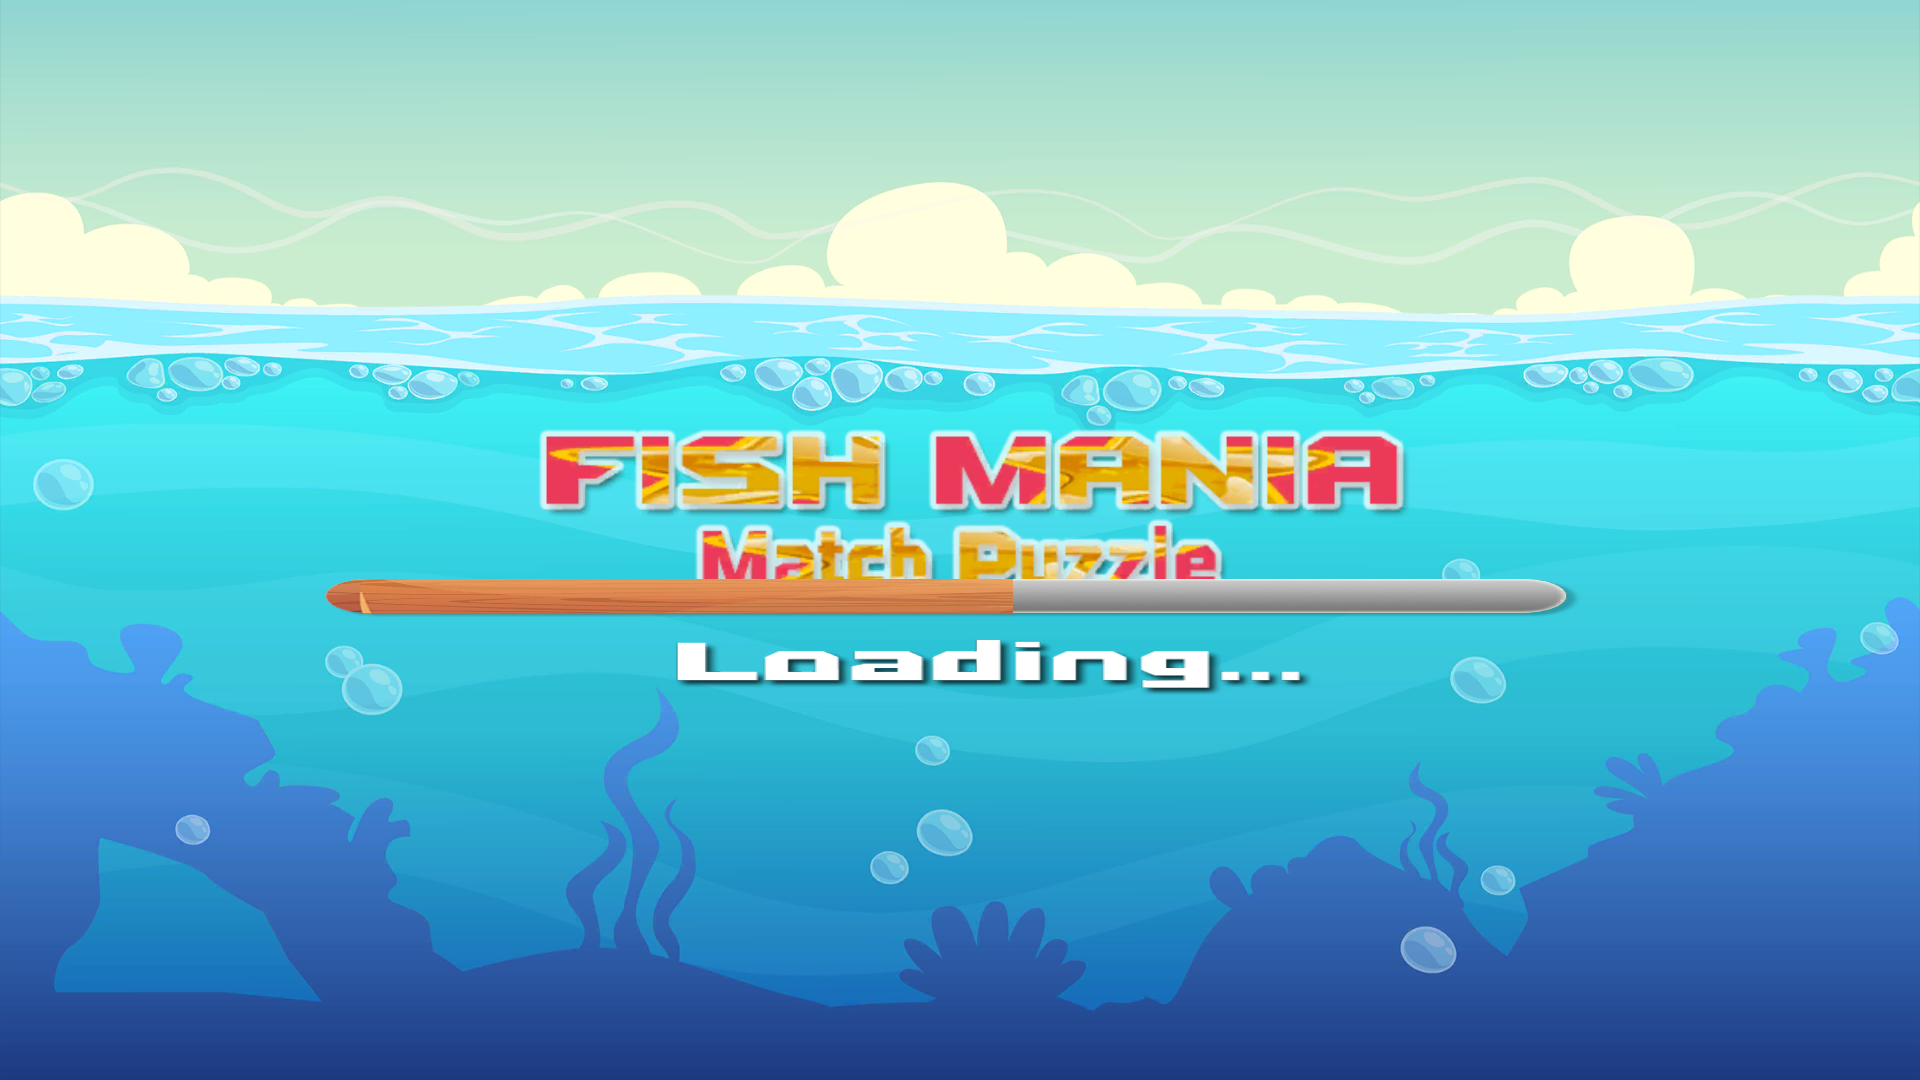 Fish Mania - Swap-Match Puzzle Gameのキャプチャ